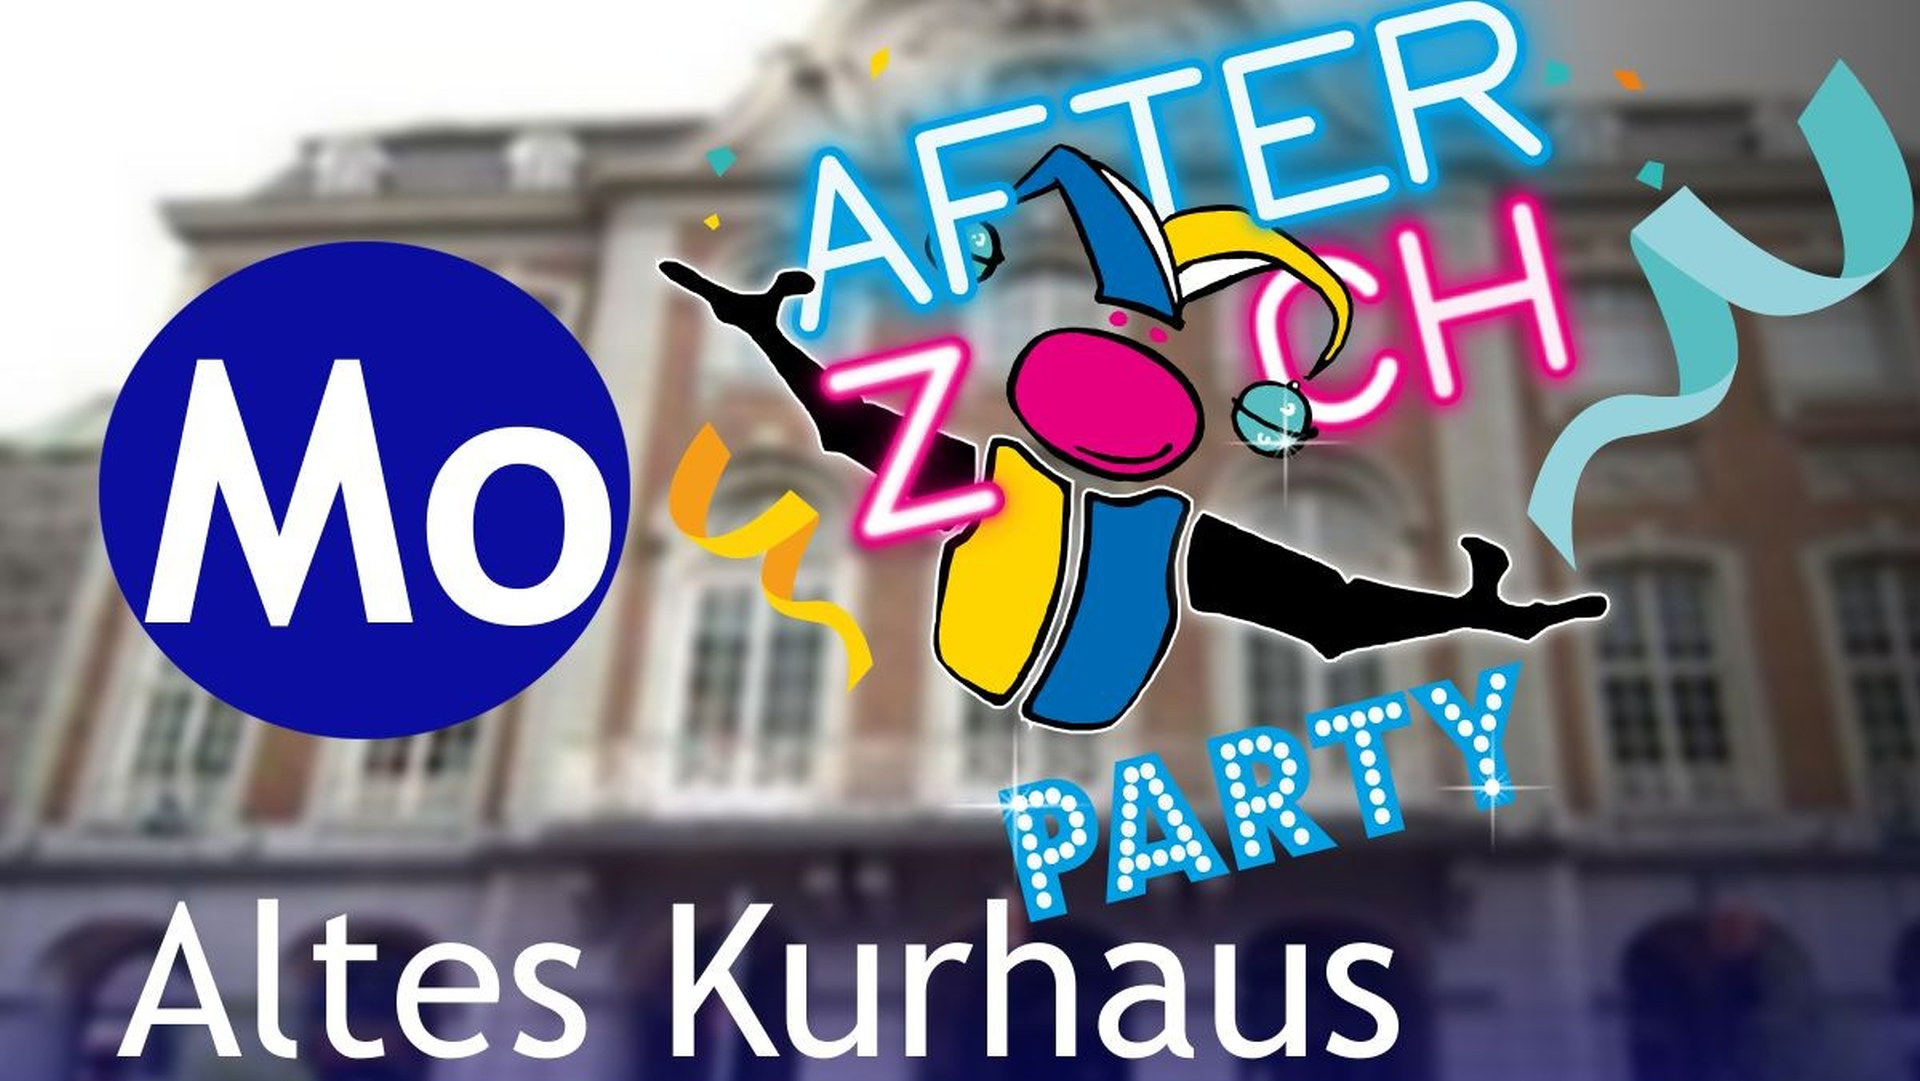 Carnevale After-Zoch-Party | AKV